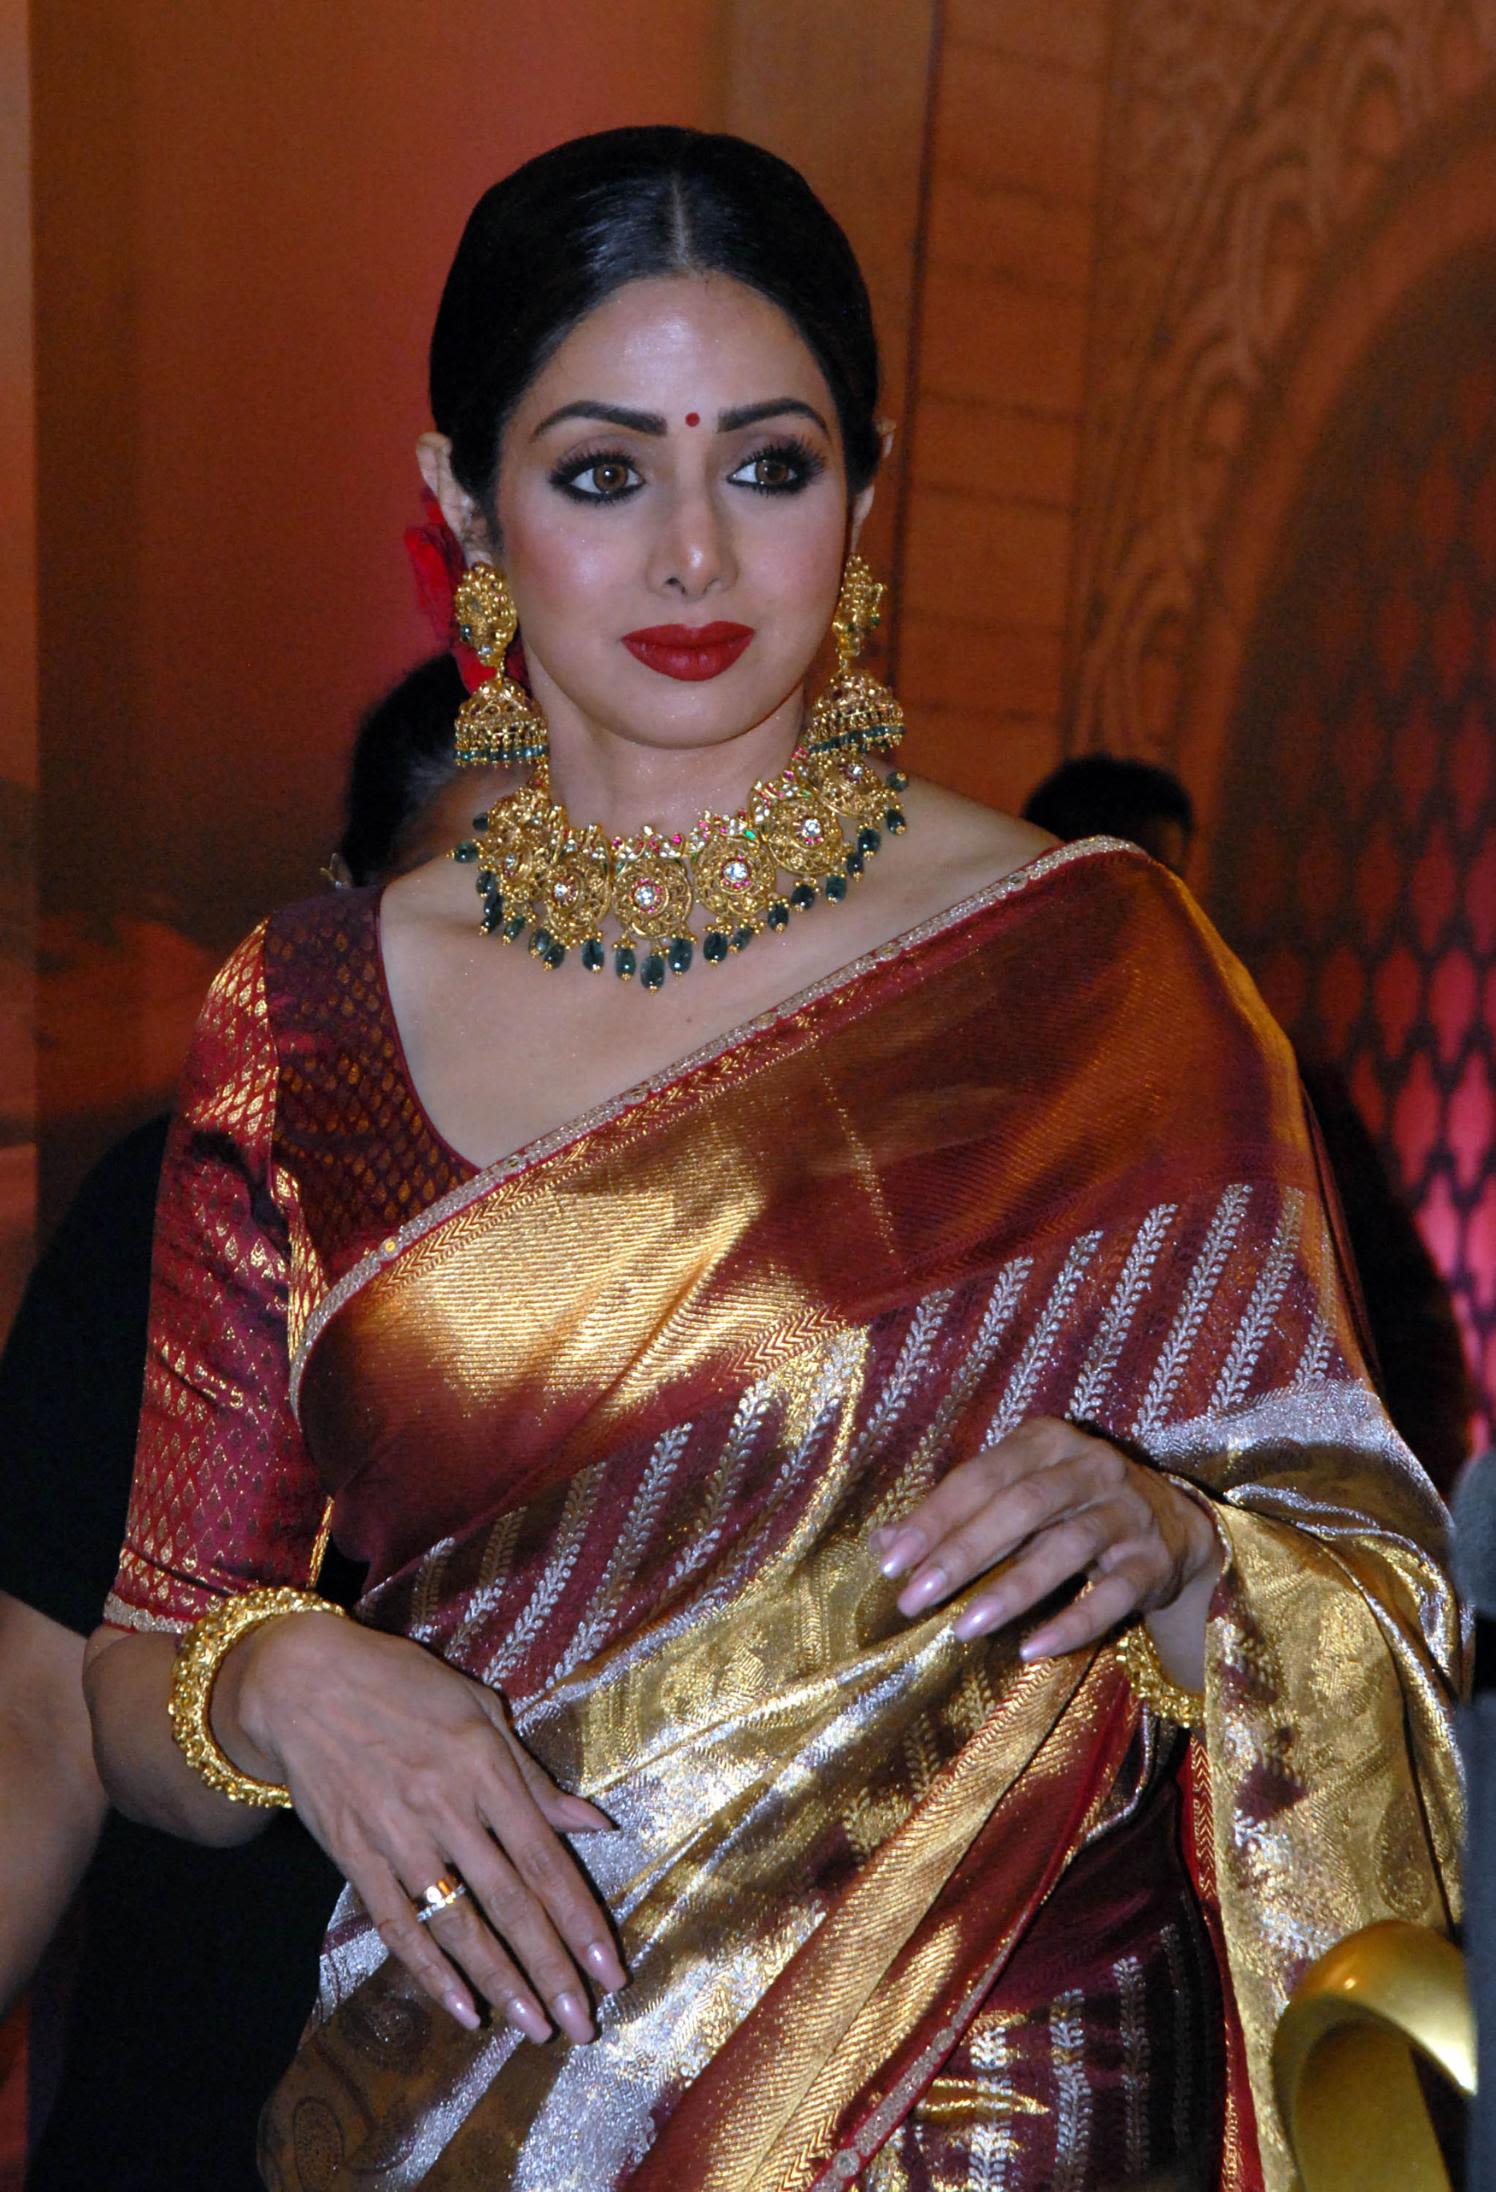 Sridevi Ki Xxx Videos - Sridevi, beloved Bollywood actress, dead at 54 | CNN